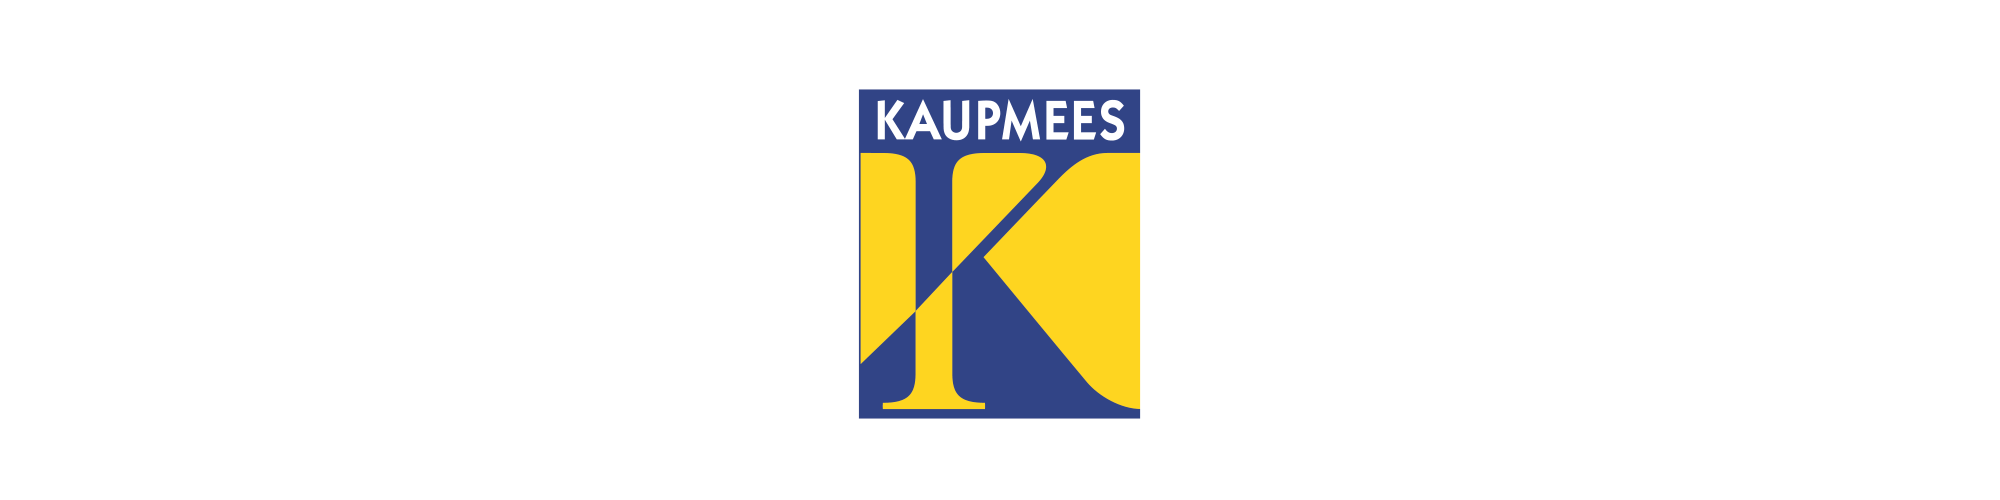 logo_kaupmees